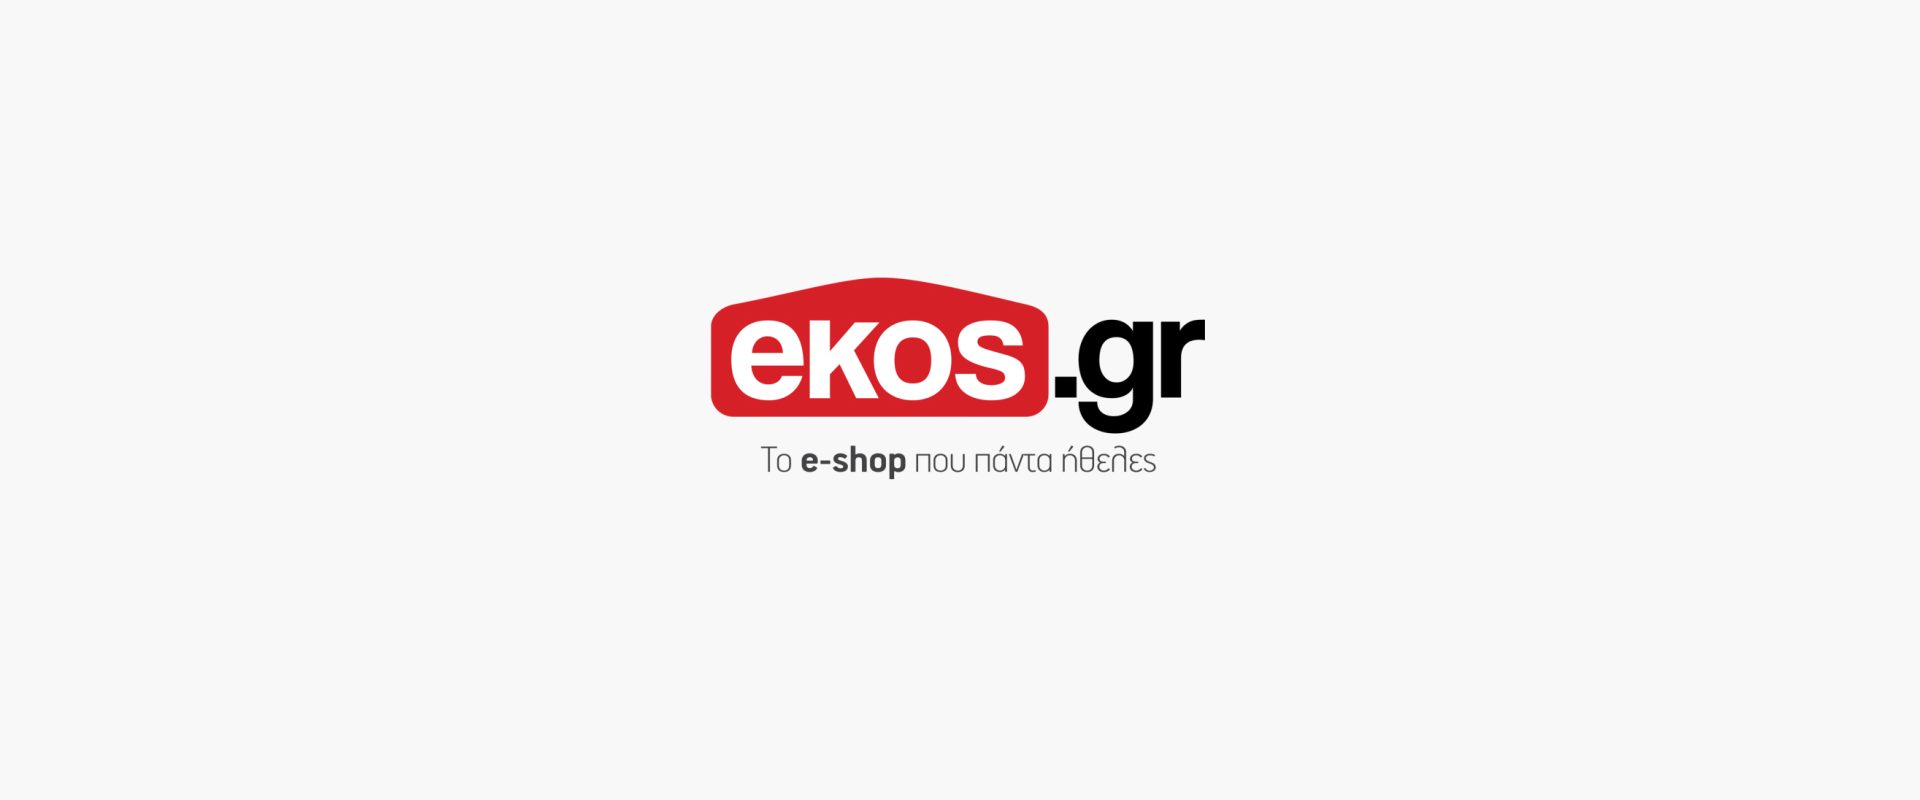 ekos.gr σημα αρχης